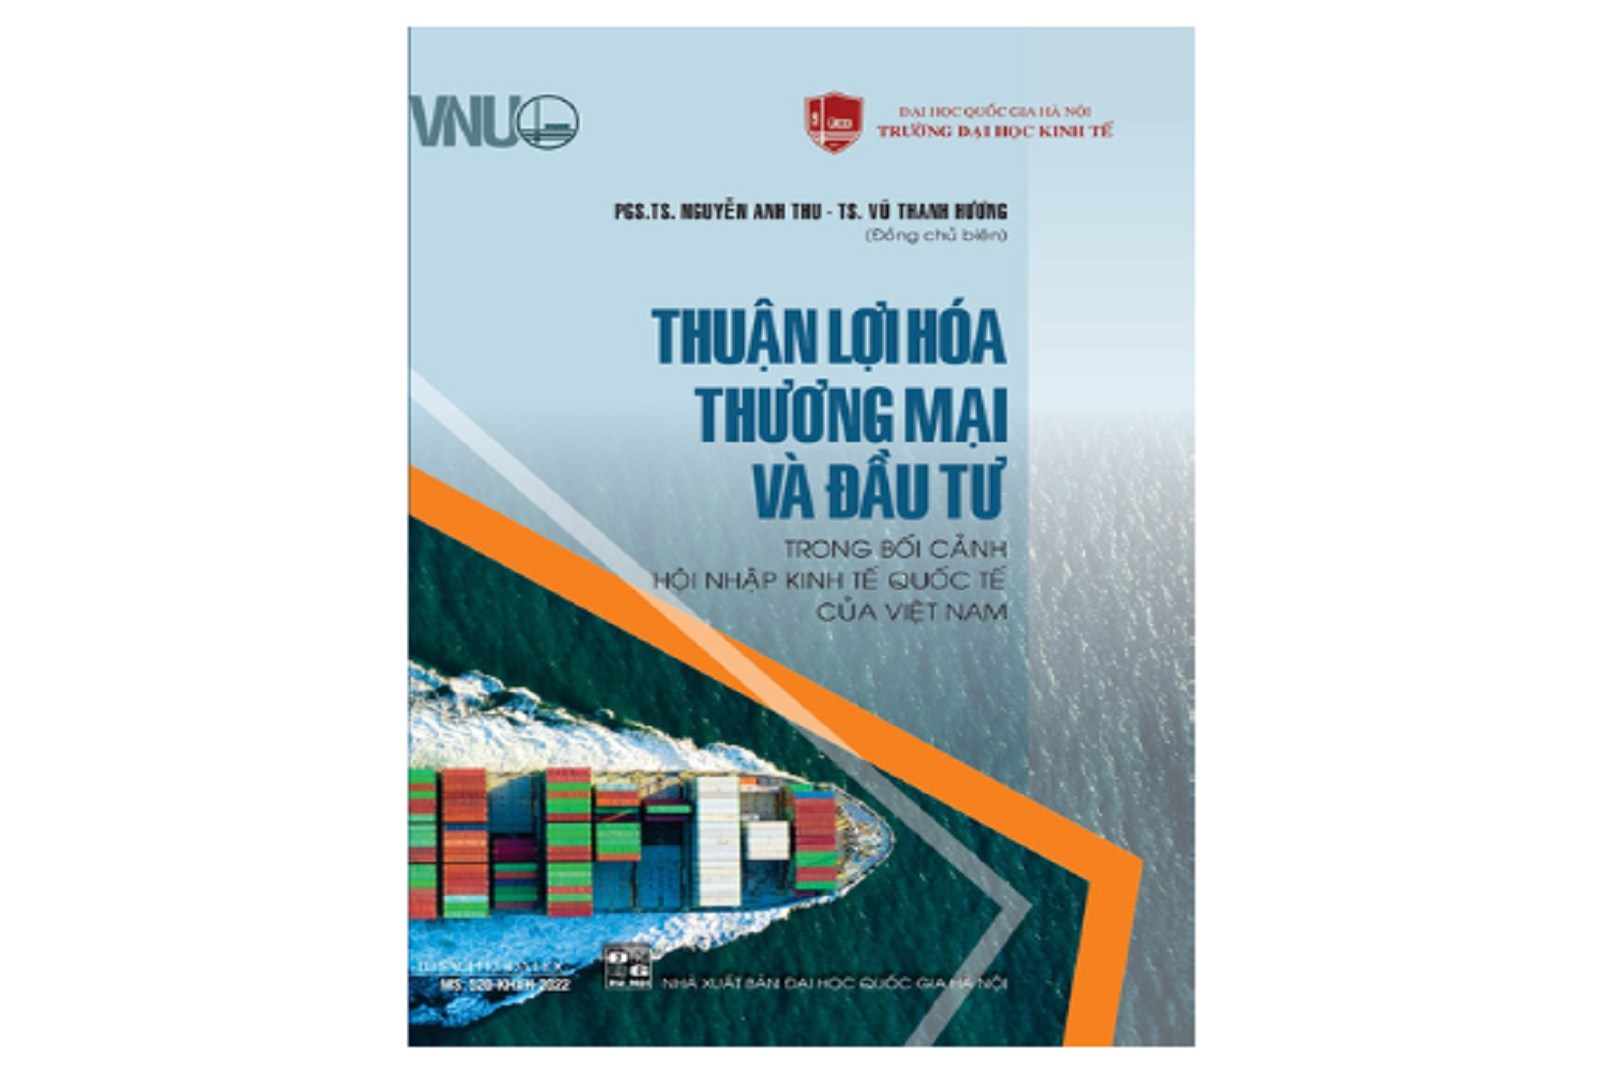 Thuận lợi hóa thương mại và đầu tư trong bối cảnh hội nhập kinh tế quốc tế của Việt Nam